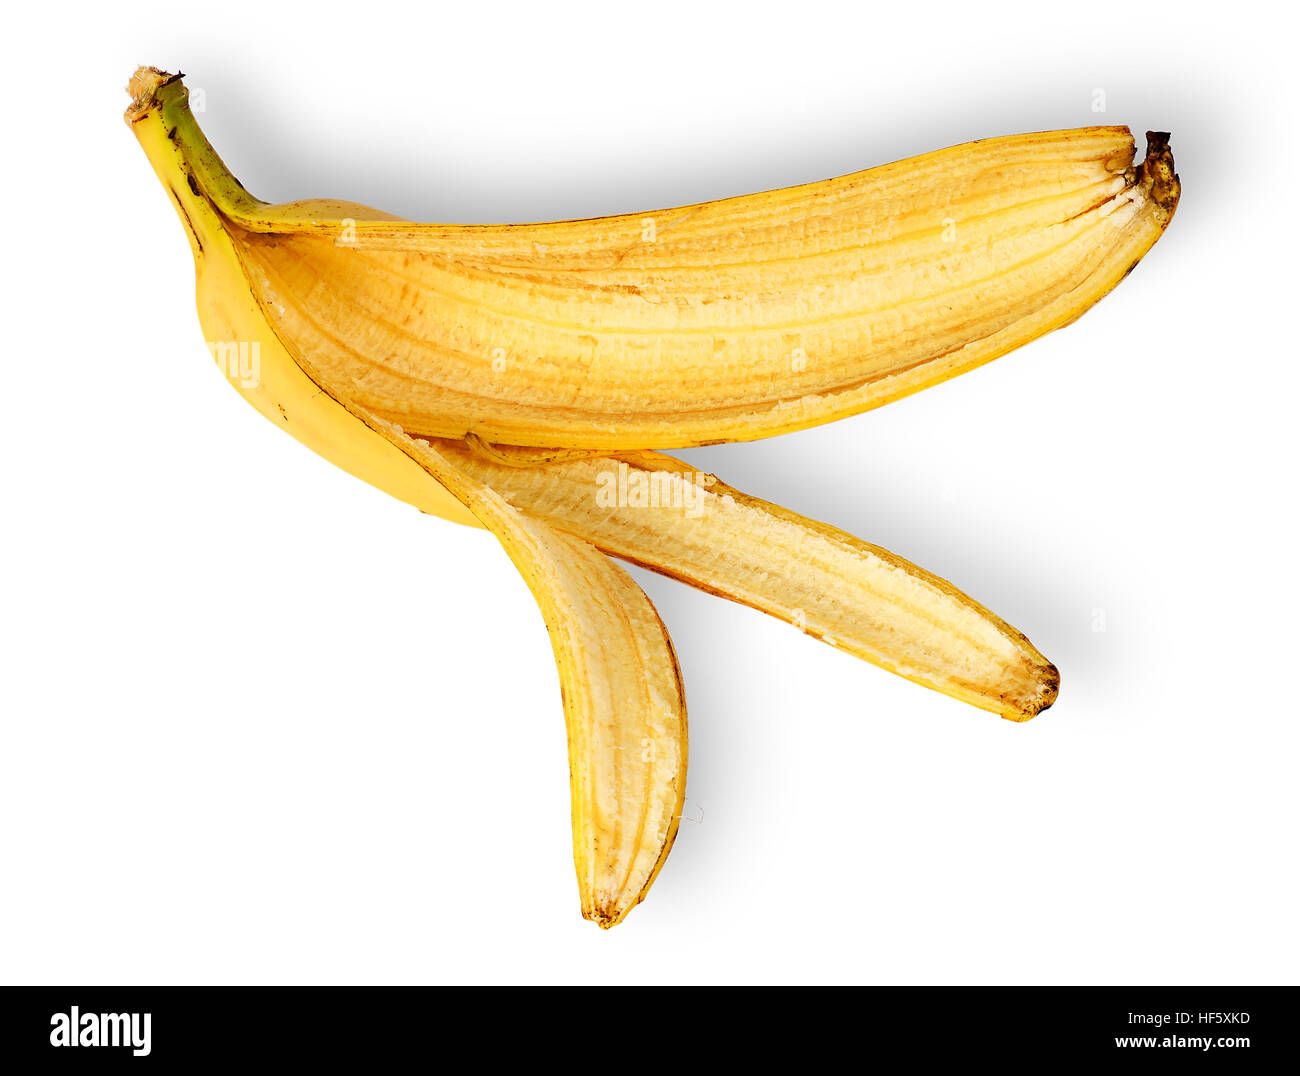 Banana skin deployed horizontally isolated on white background Stock Photo